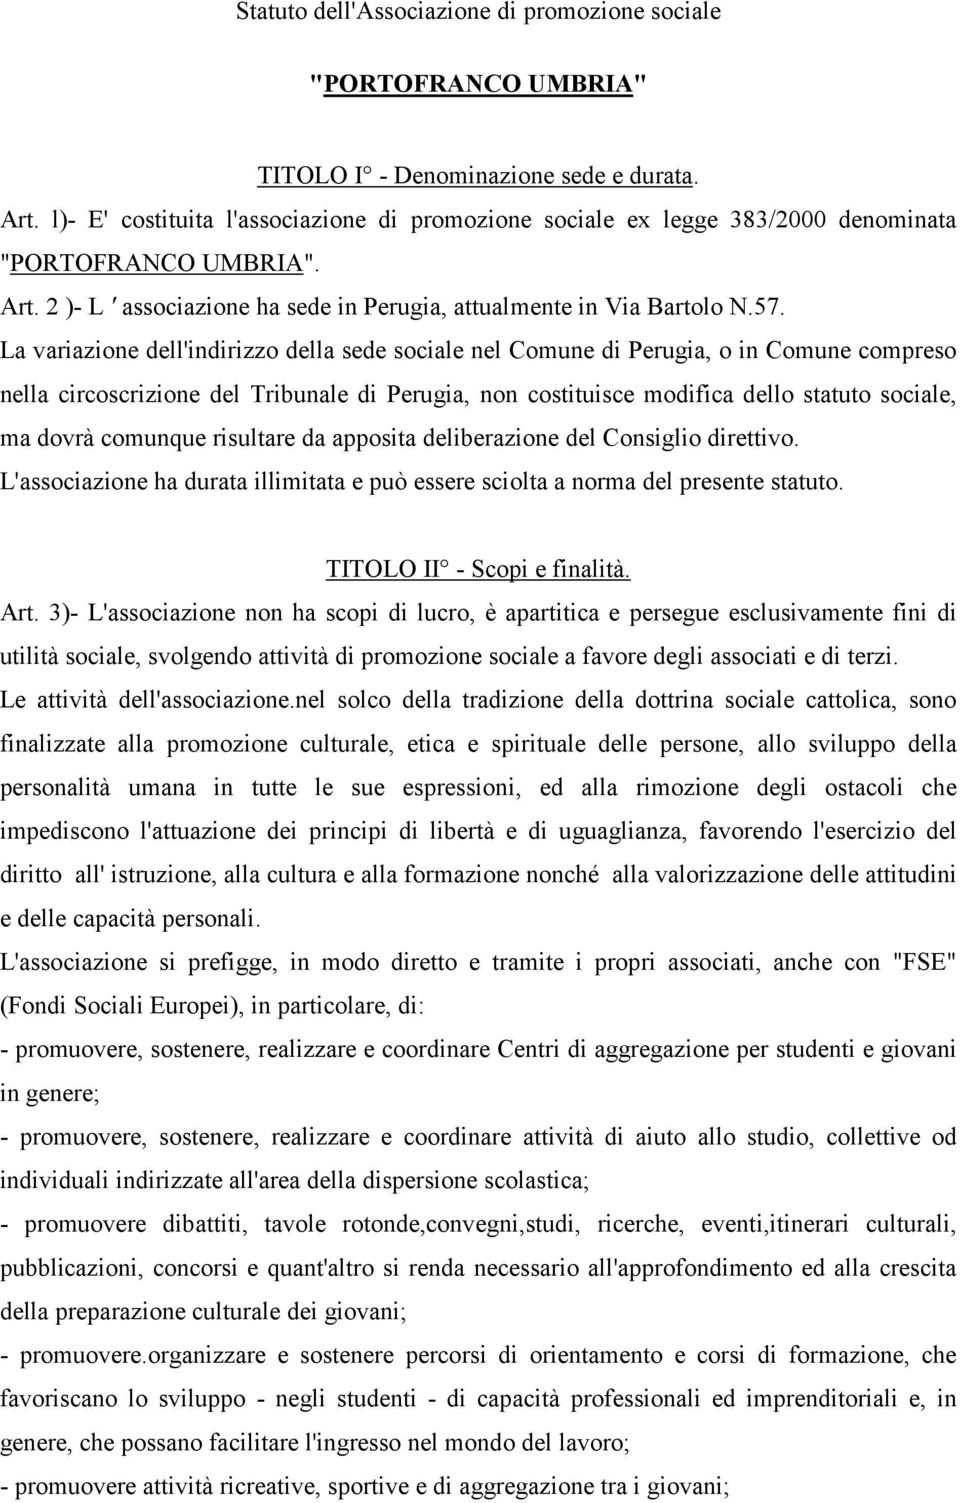 La variazione dell'indirizzo della sede sociale nel Comune di Perugia, o in Comune compreso nella circoscrizione del Tribunale di Perugia, non costituisce modifica dello statuto sociale, ma dovrà